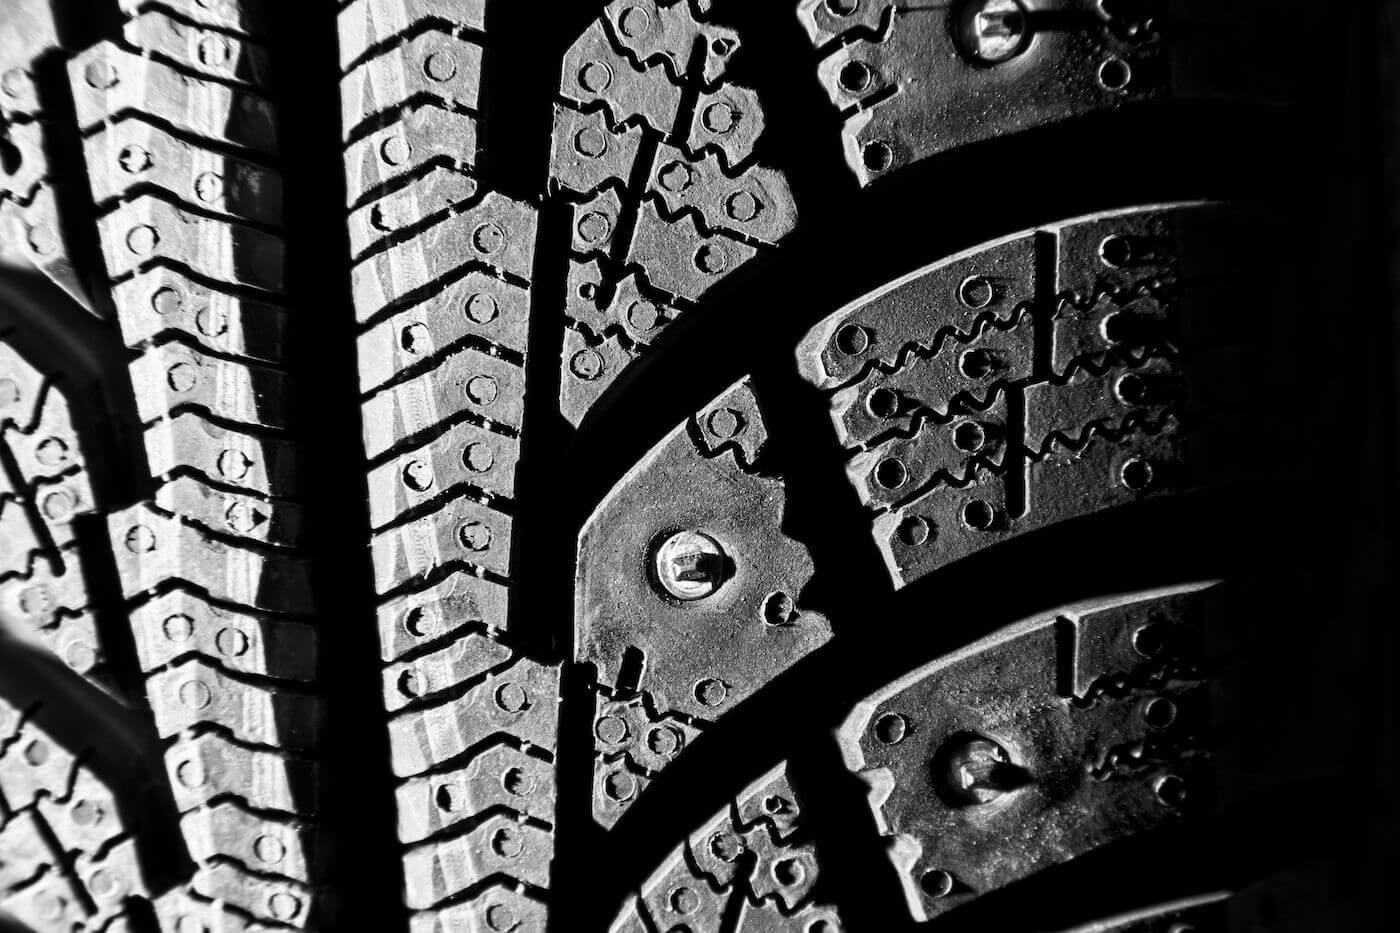 Des pneus d'hiver avec clous, qu'est-ce que c'est?